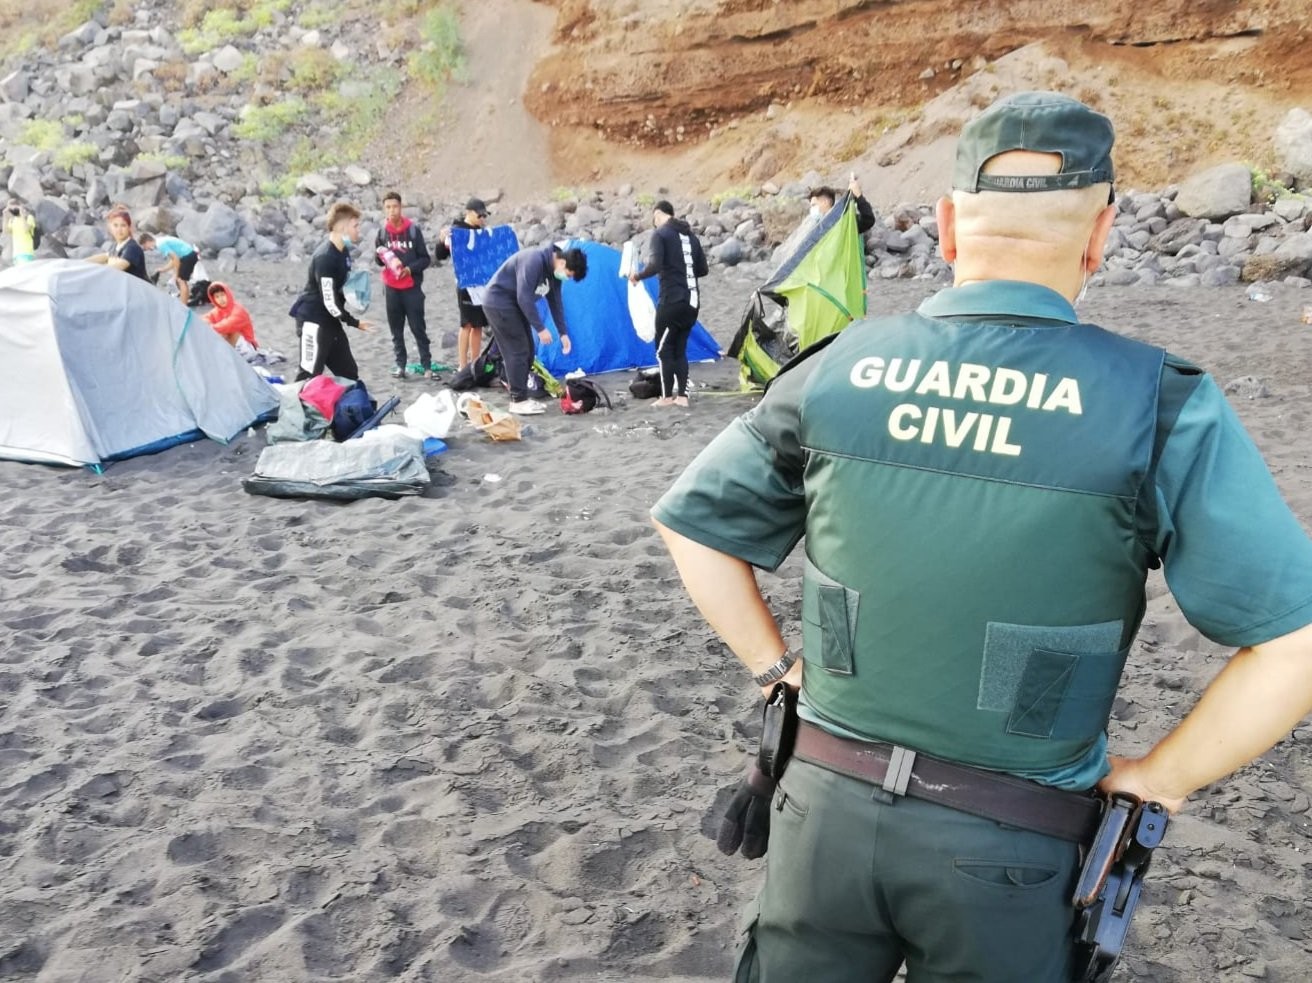 Acampamento ilegal formado em praia nas Ilhas Canárias que tinha o objetivo de transmitir o coronavírus (Foto: Reprodução/Twitter)